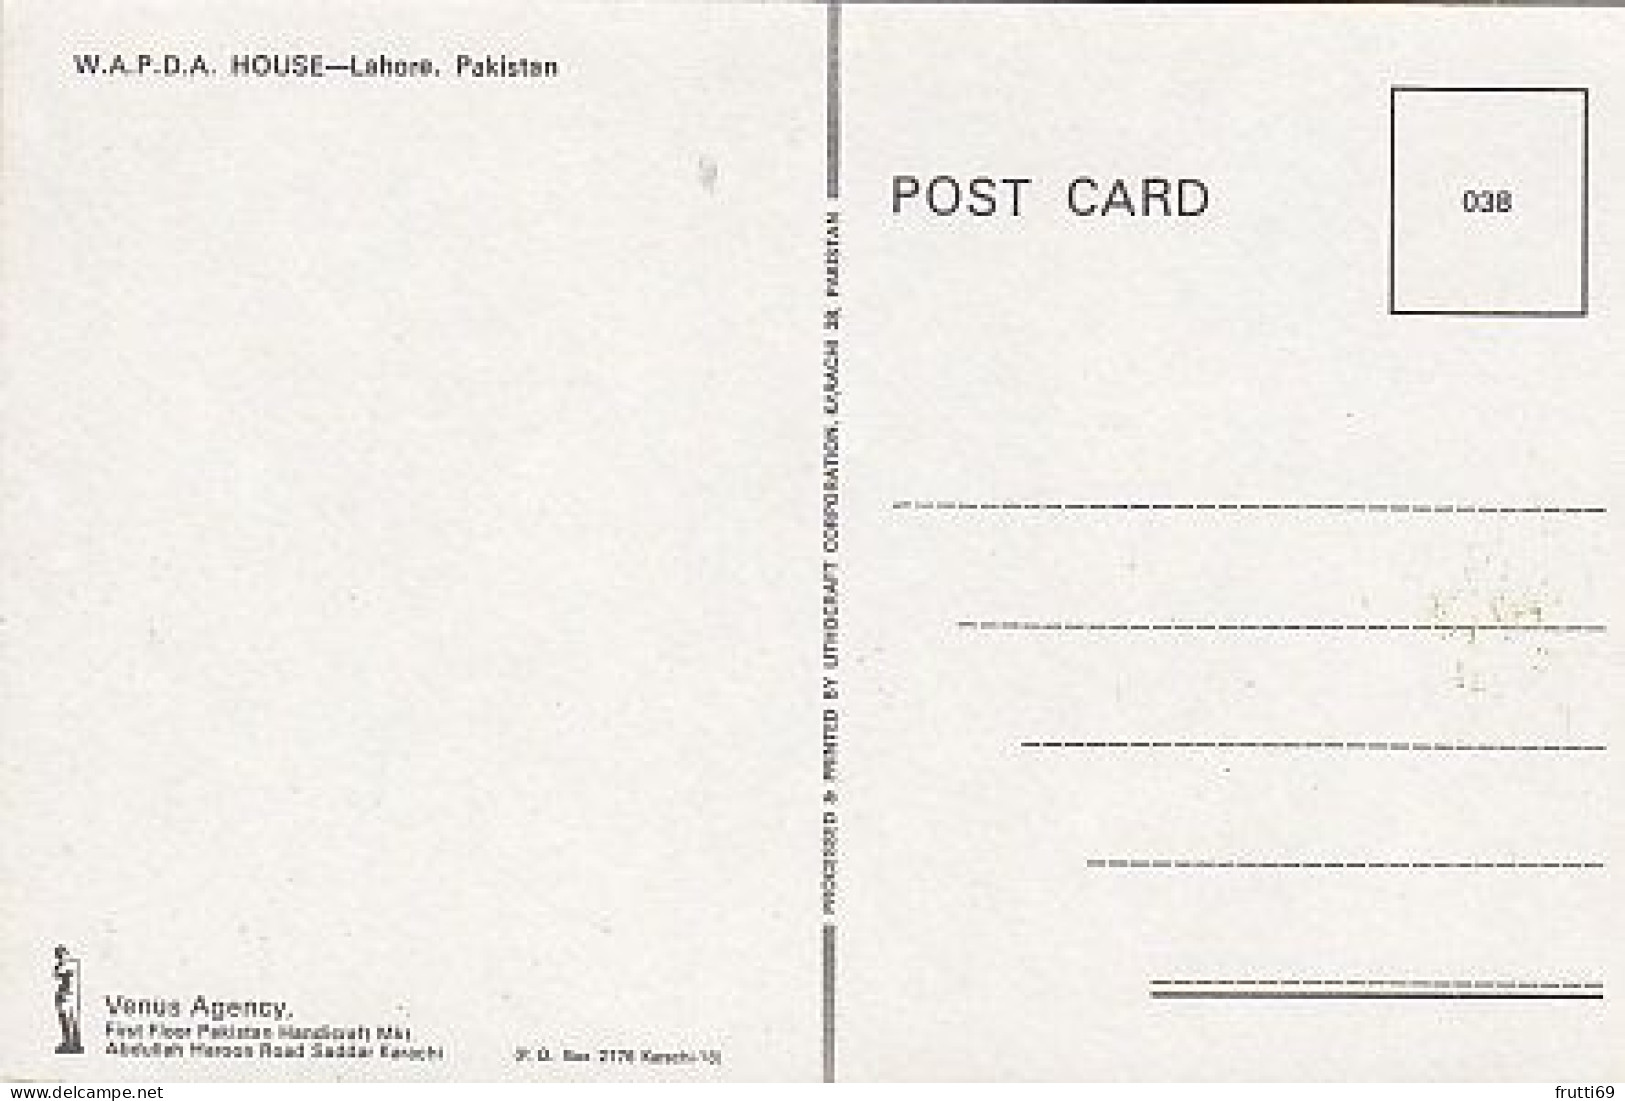 AK 185580 PAKISTAN - Lahore - W.A.P.D.A House - Pakistán